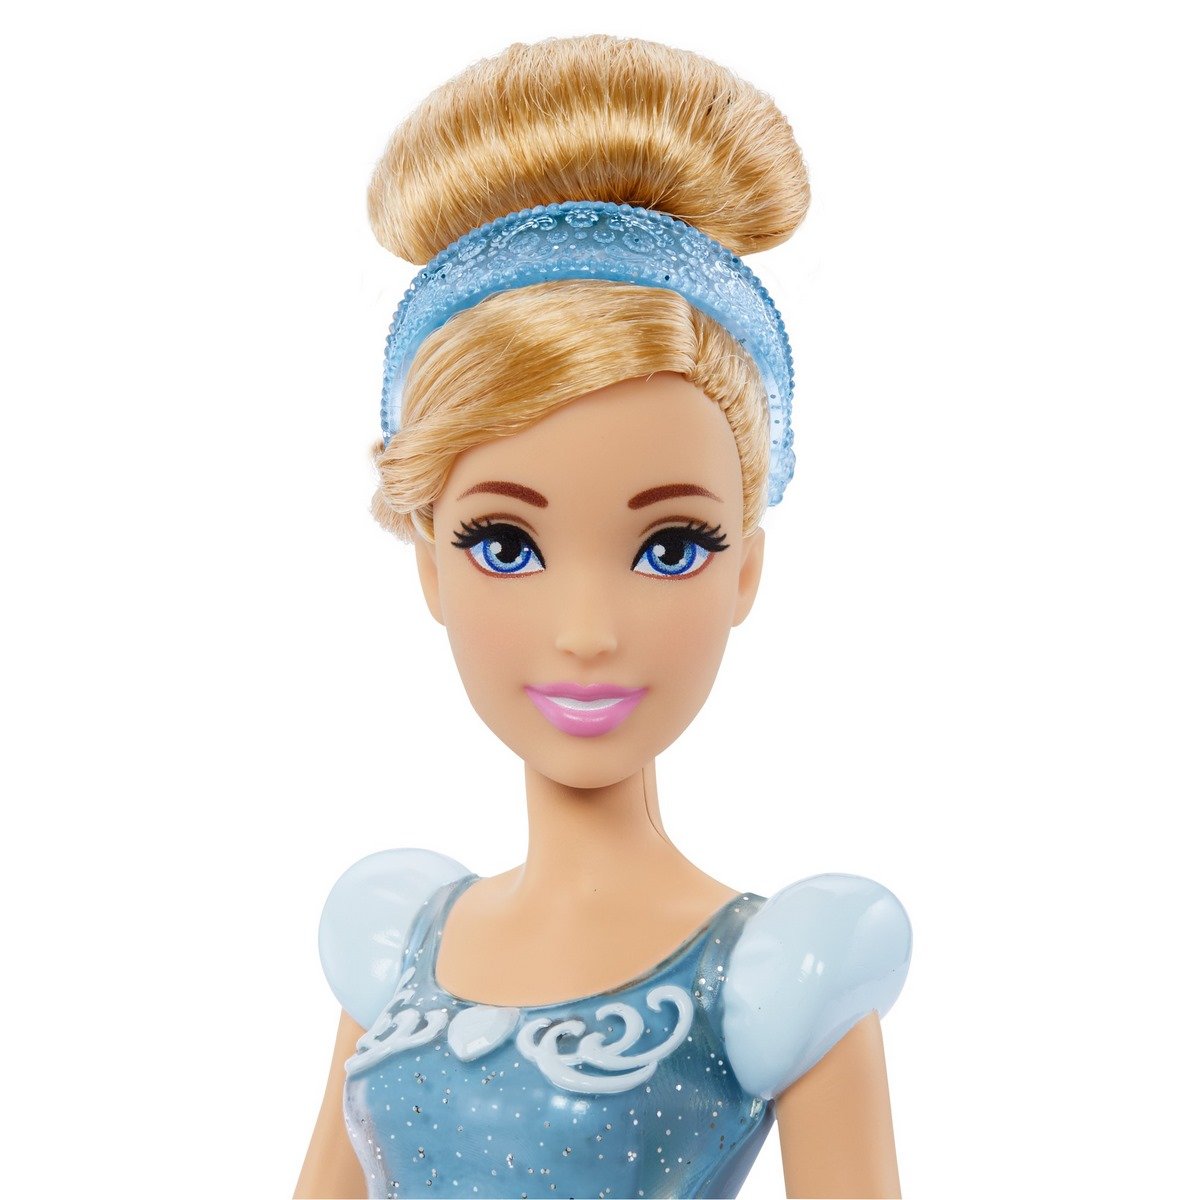 2 poupées Barbie : Cendrillon et son Prince Charmant 